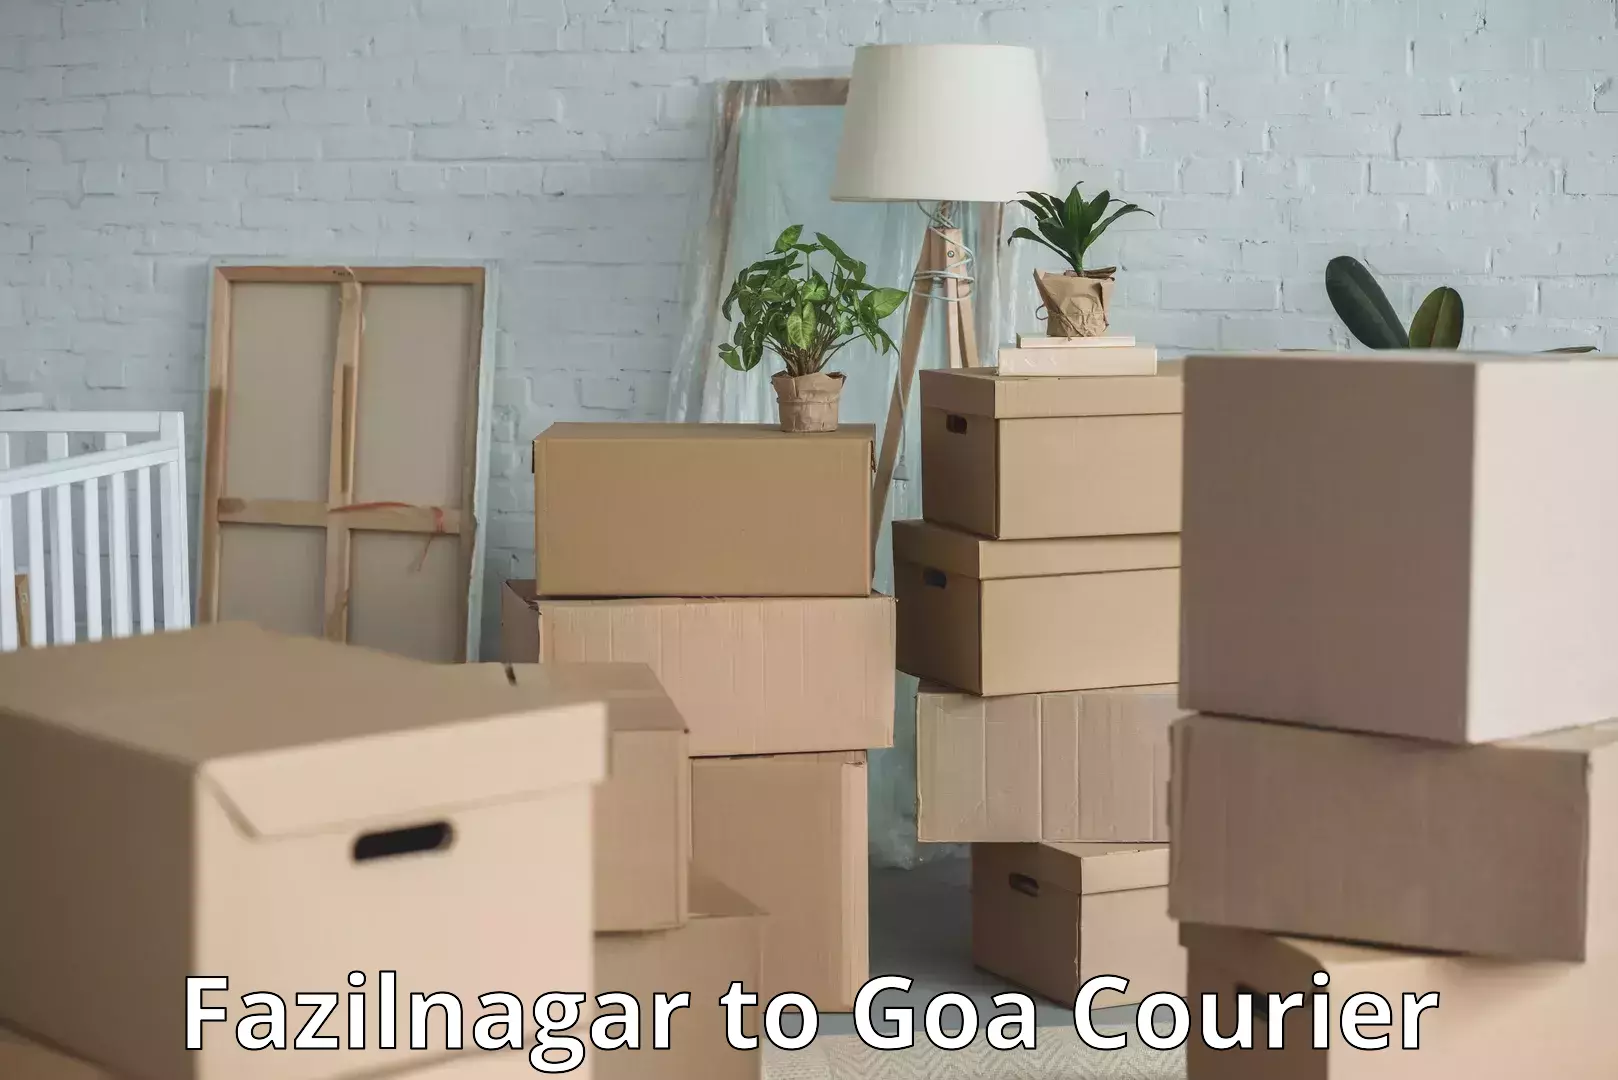 Digital baggage courier Fazilnagar to Goa